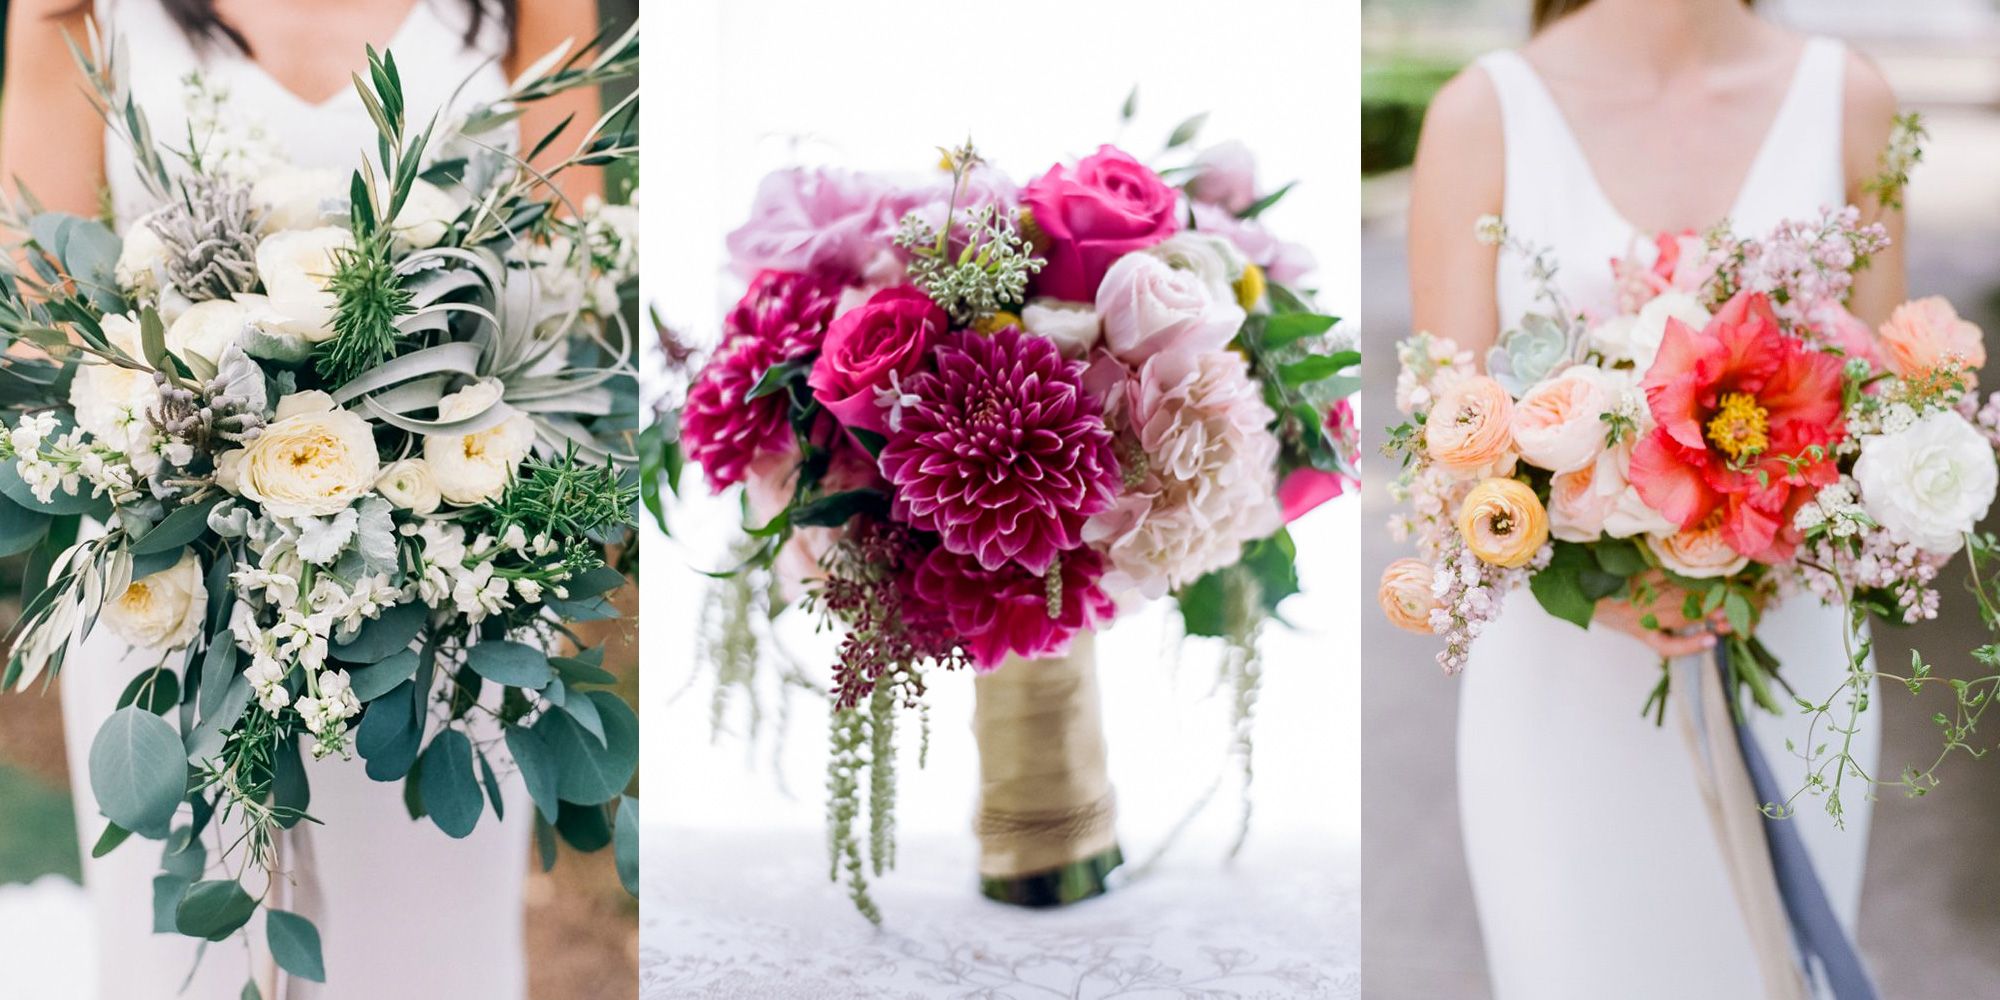 Wedding Bouquets - Bridal Bouquet Ideas 